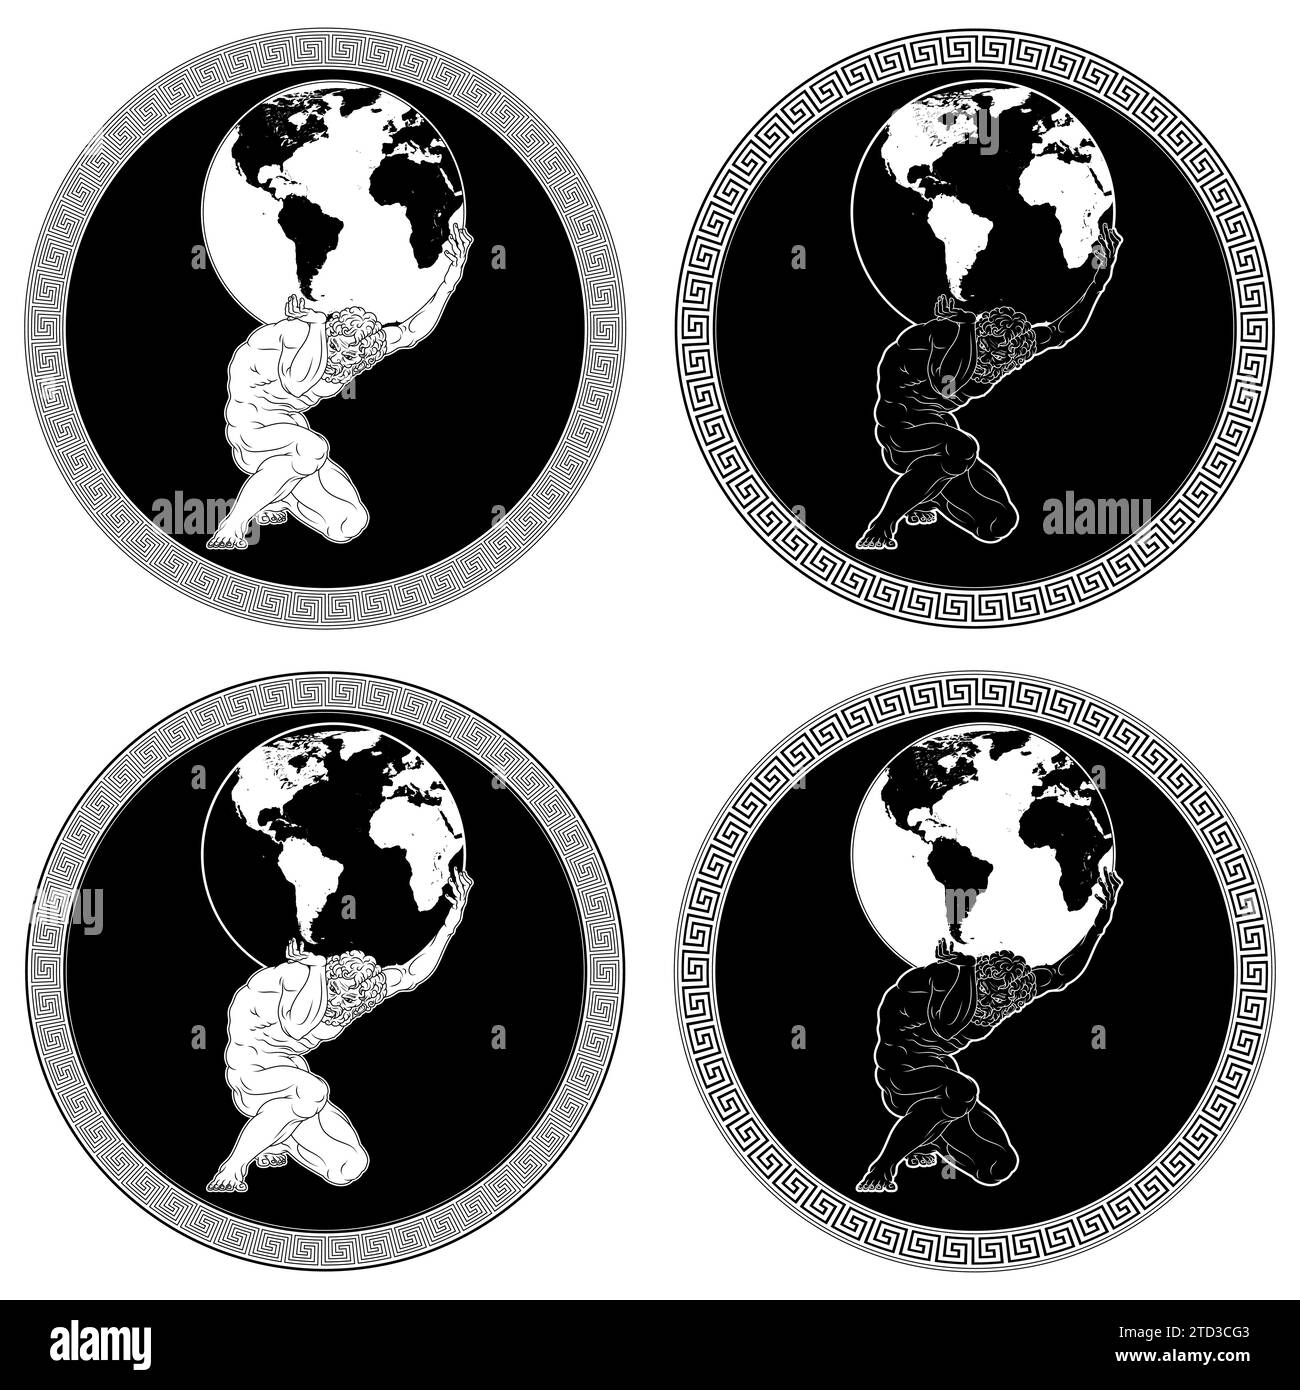 Conception vectorielle de Titan Atlas tenant la planète Terre, art amphore de Grèce antique, mythologie grecque titan Illustration de Vecteur